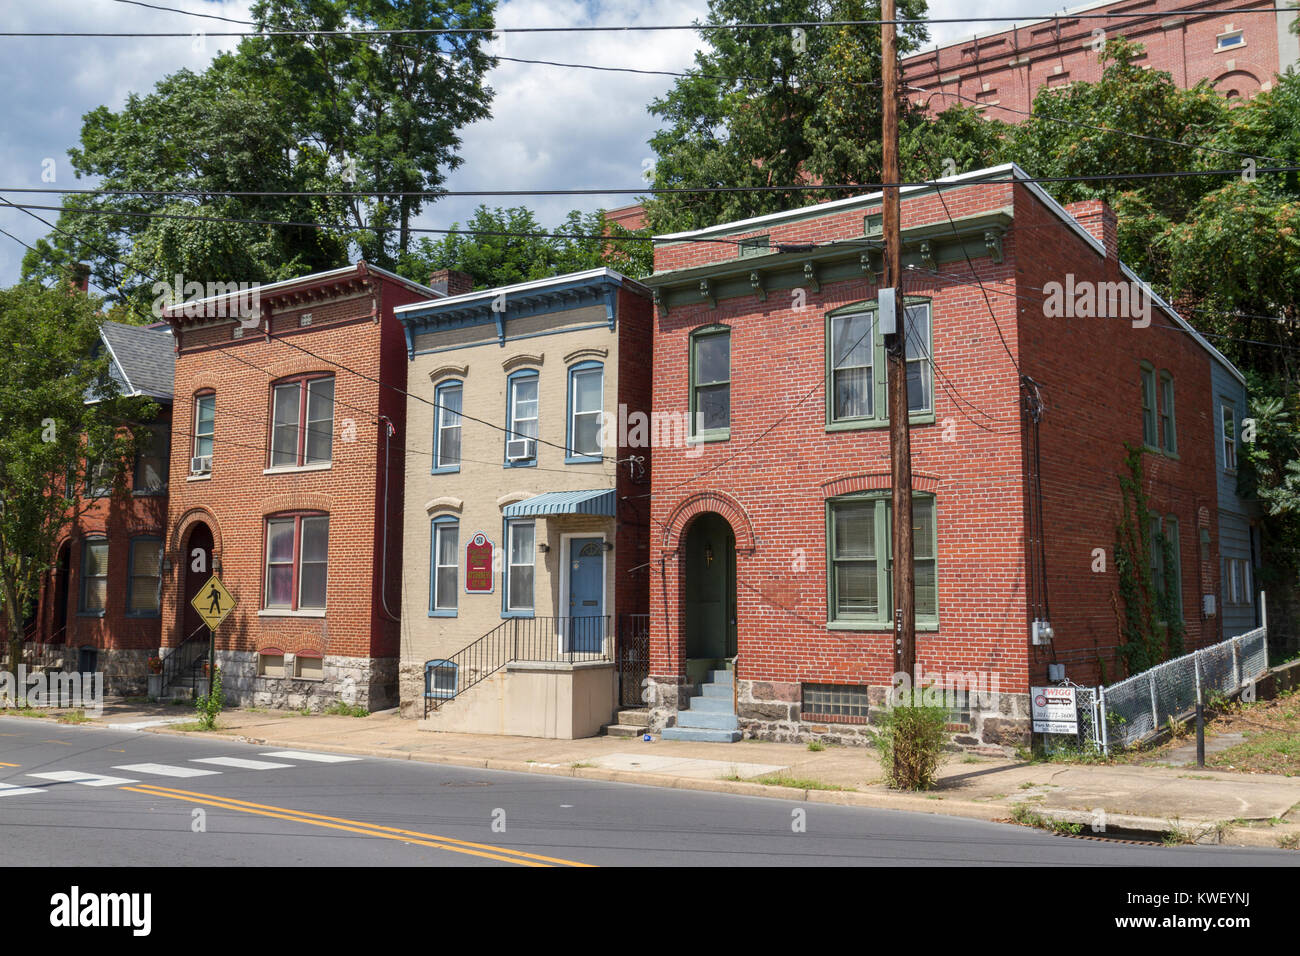 Rangée de maisons historiques typiques dans le centre de la ville de Cumberland, Maryland, United States. Banque D'Images